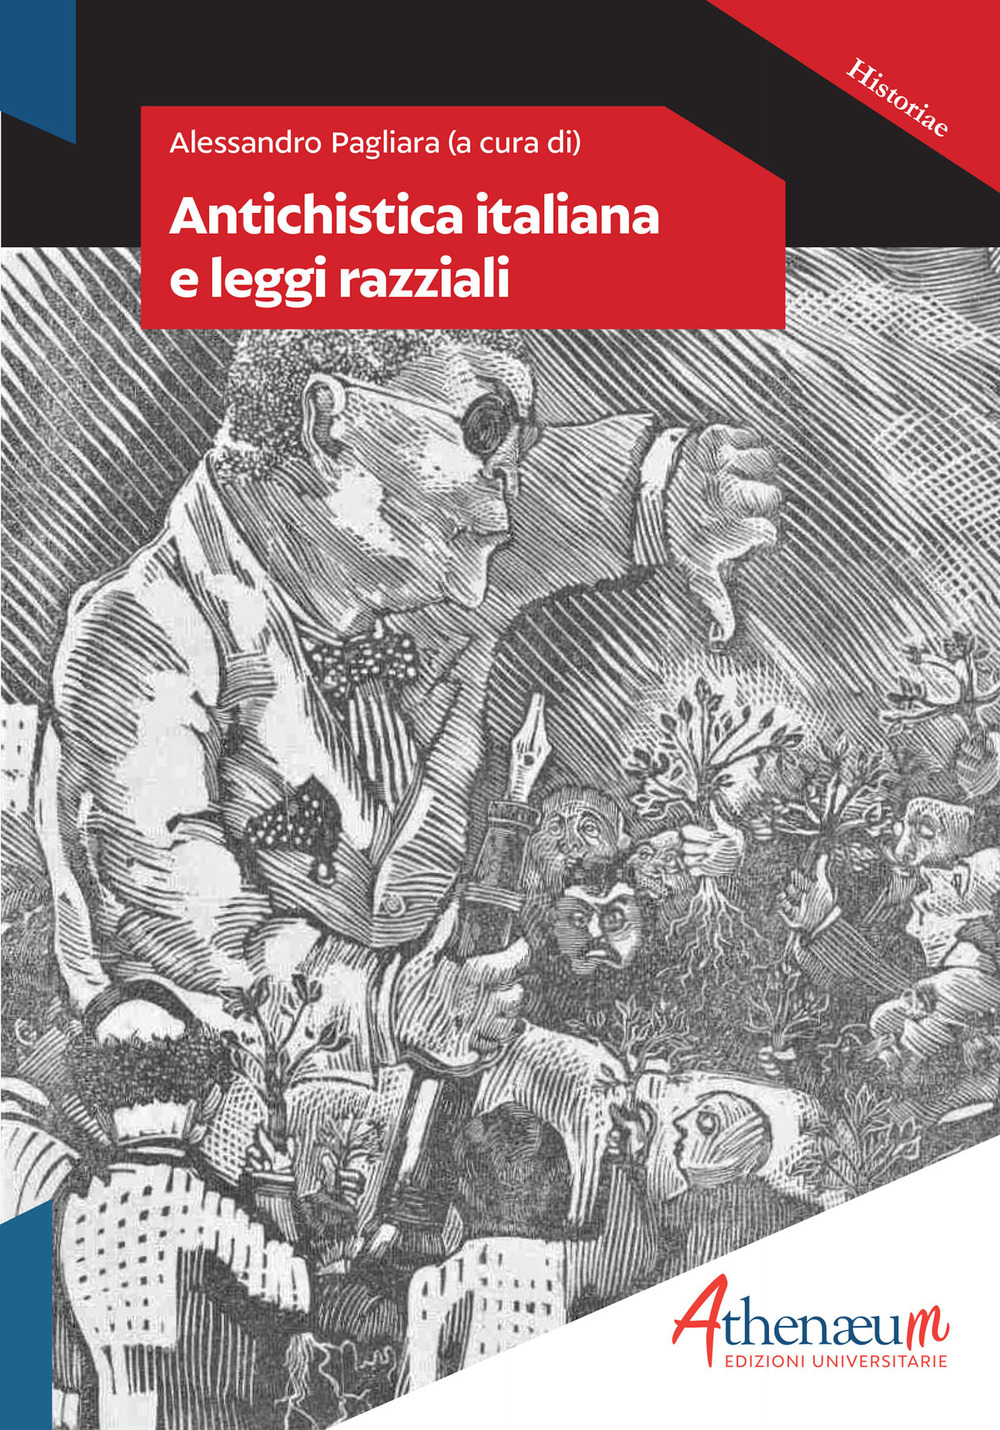 Libri Antichistica Italiana E Leggi Razziali NUOVO SIGILLATO, EDIZIONE DEL 25/04/2020 SUBITO DISPONIBILE